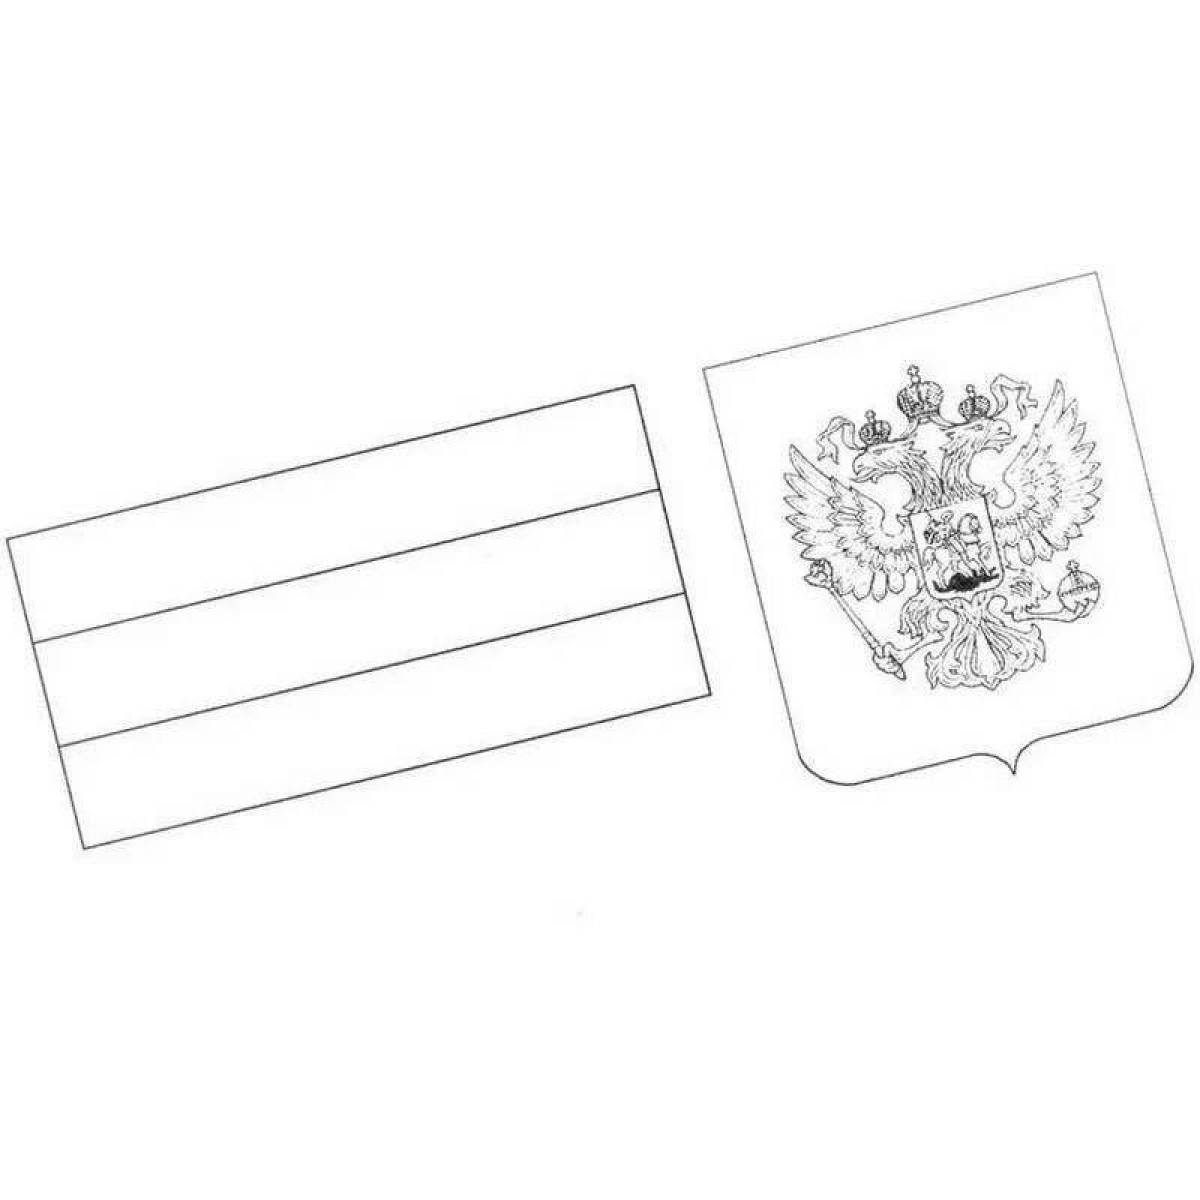 Поразительный флаг и герб россии